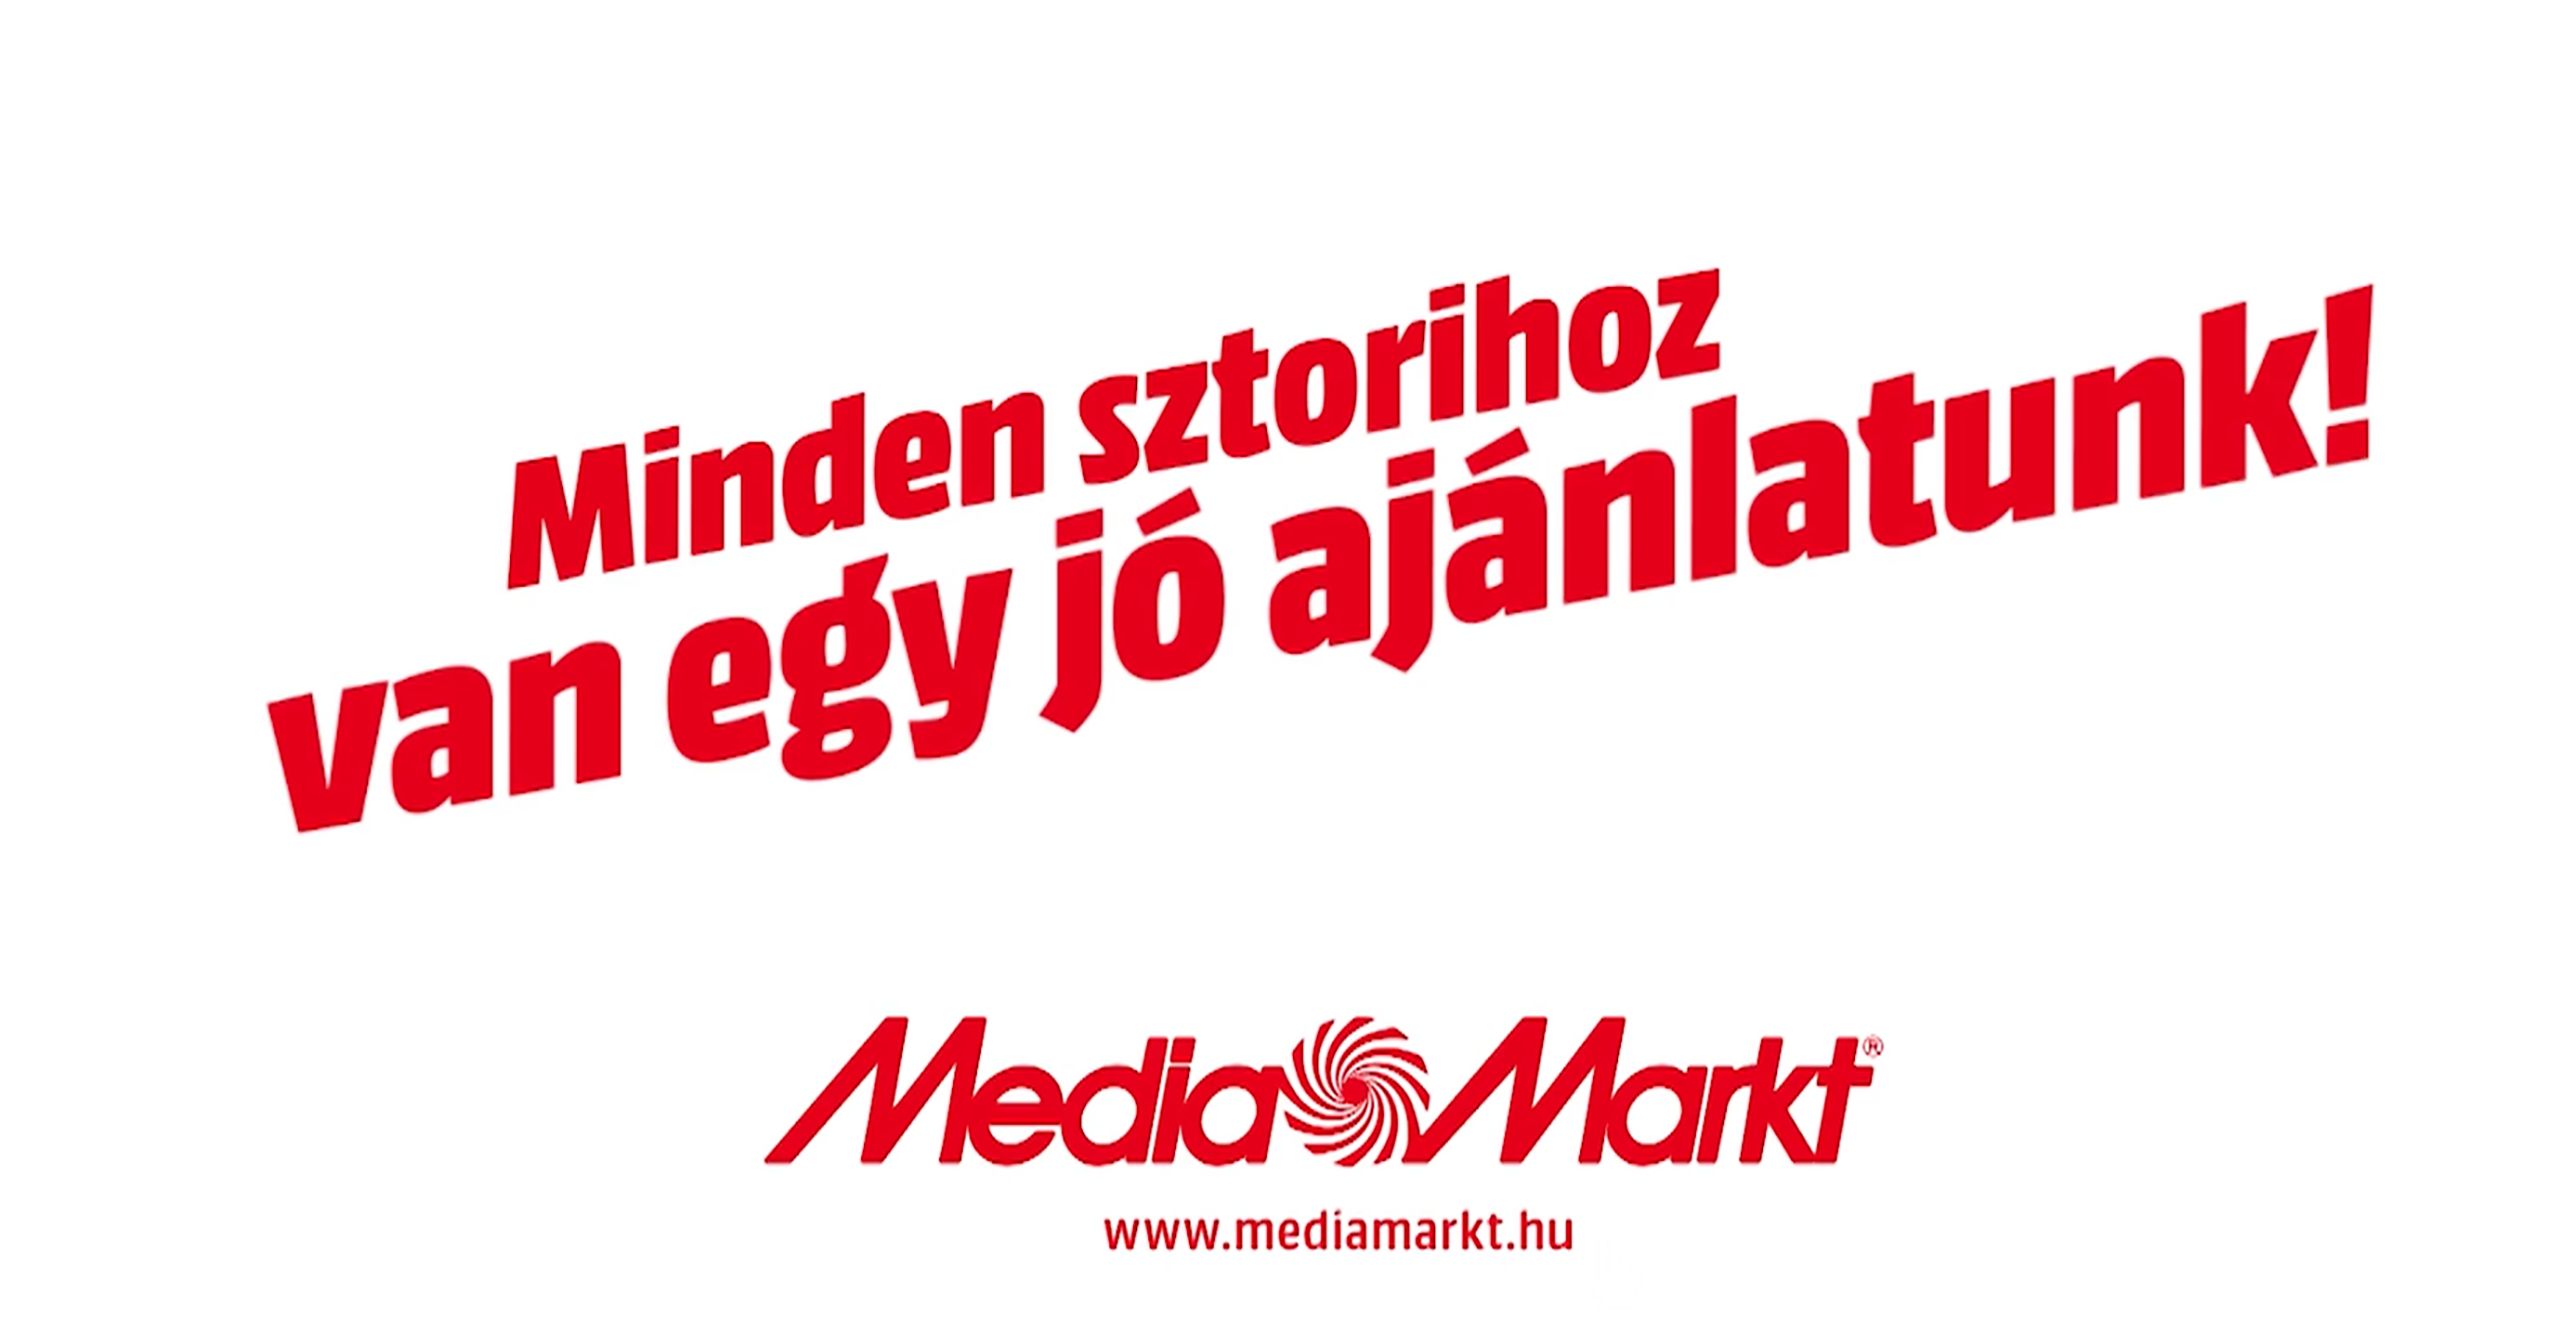 Media Markt Logo Font